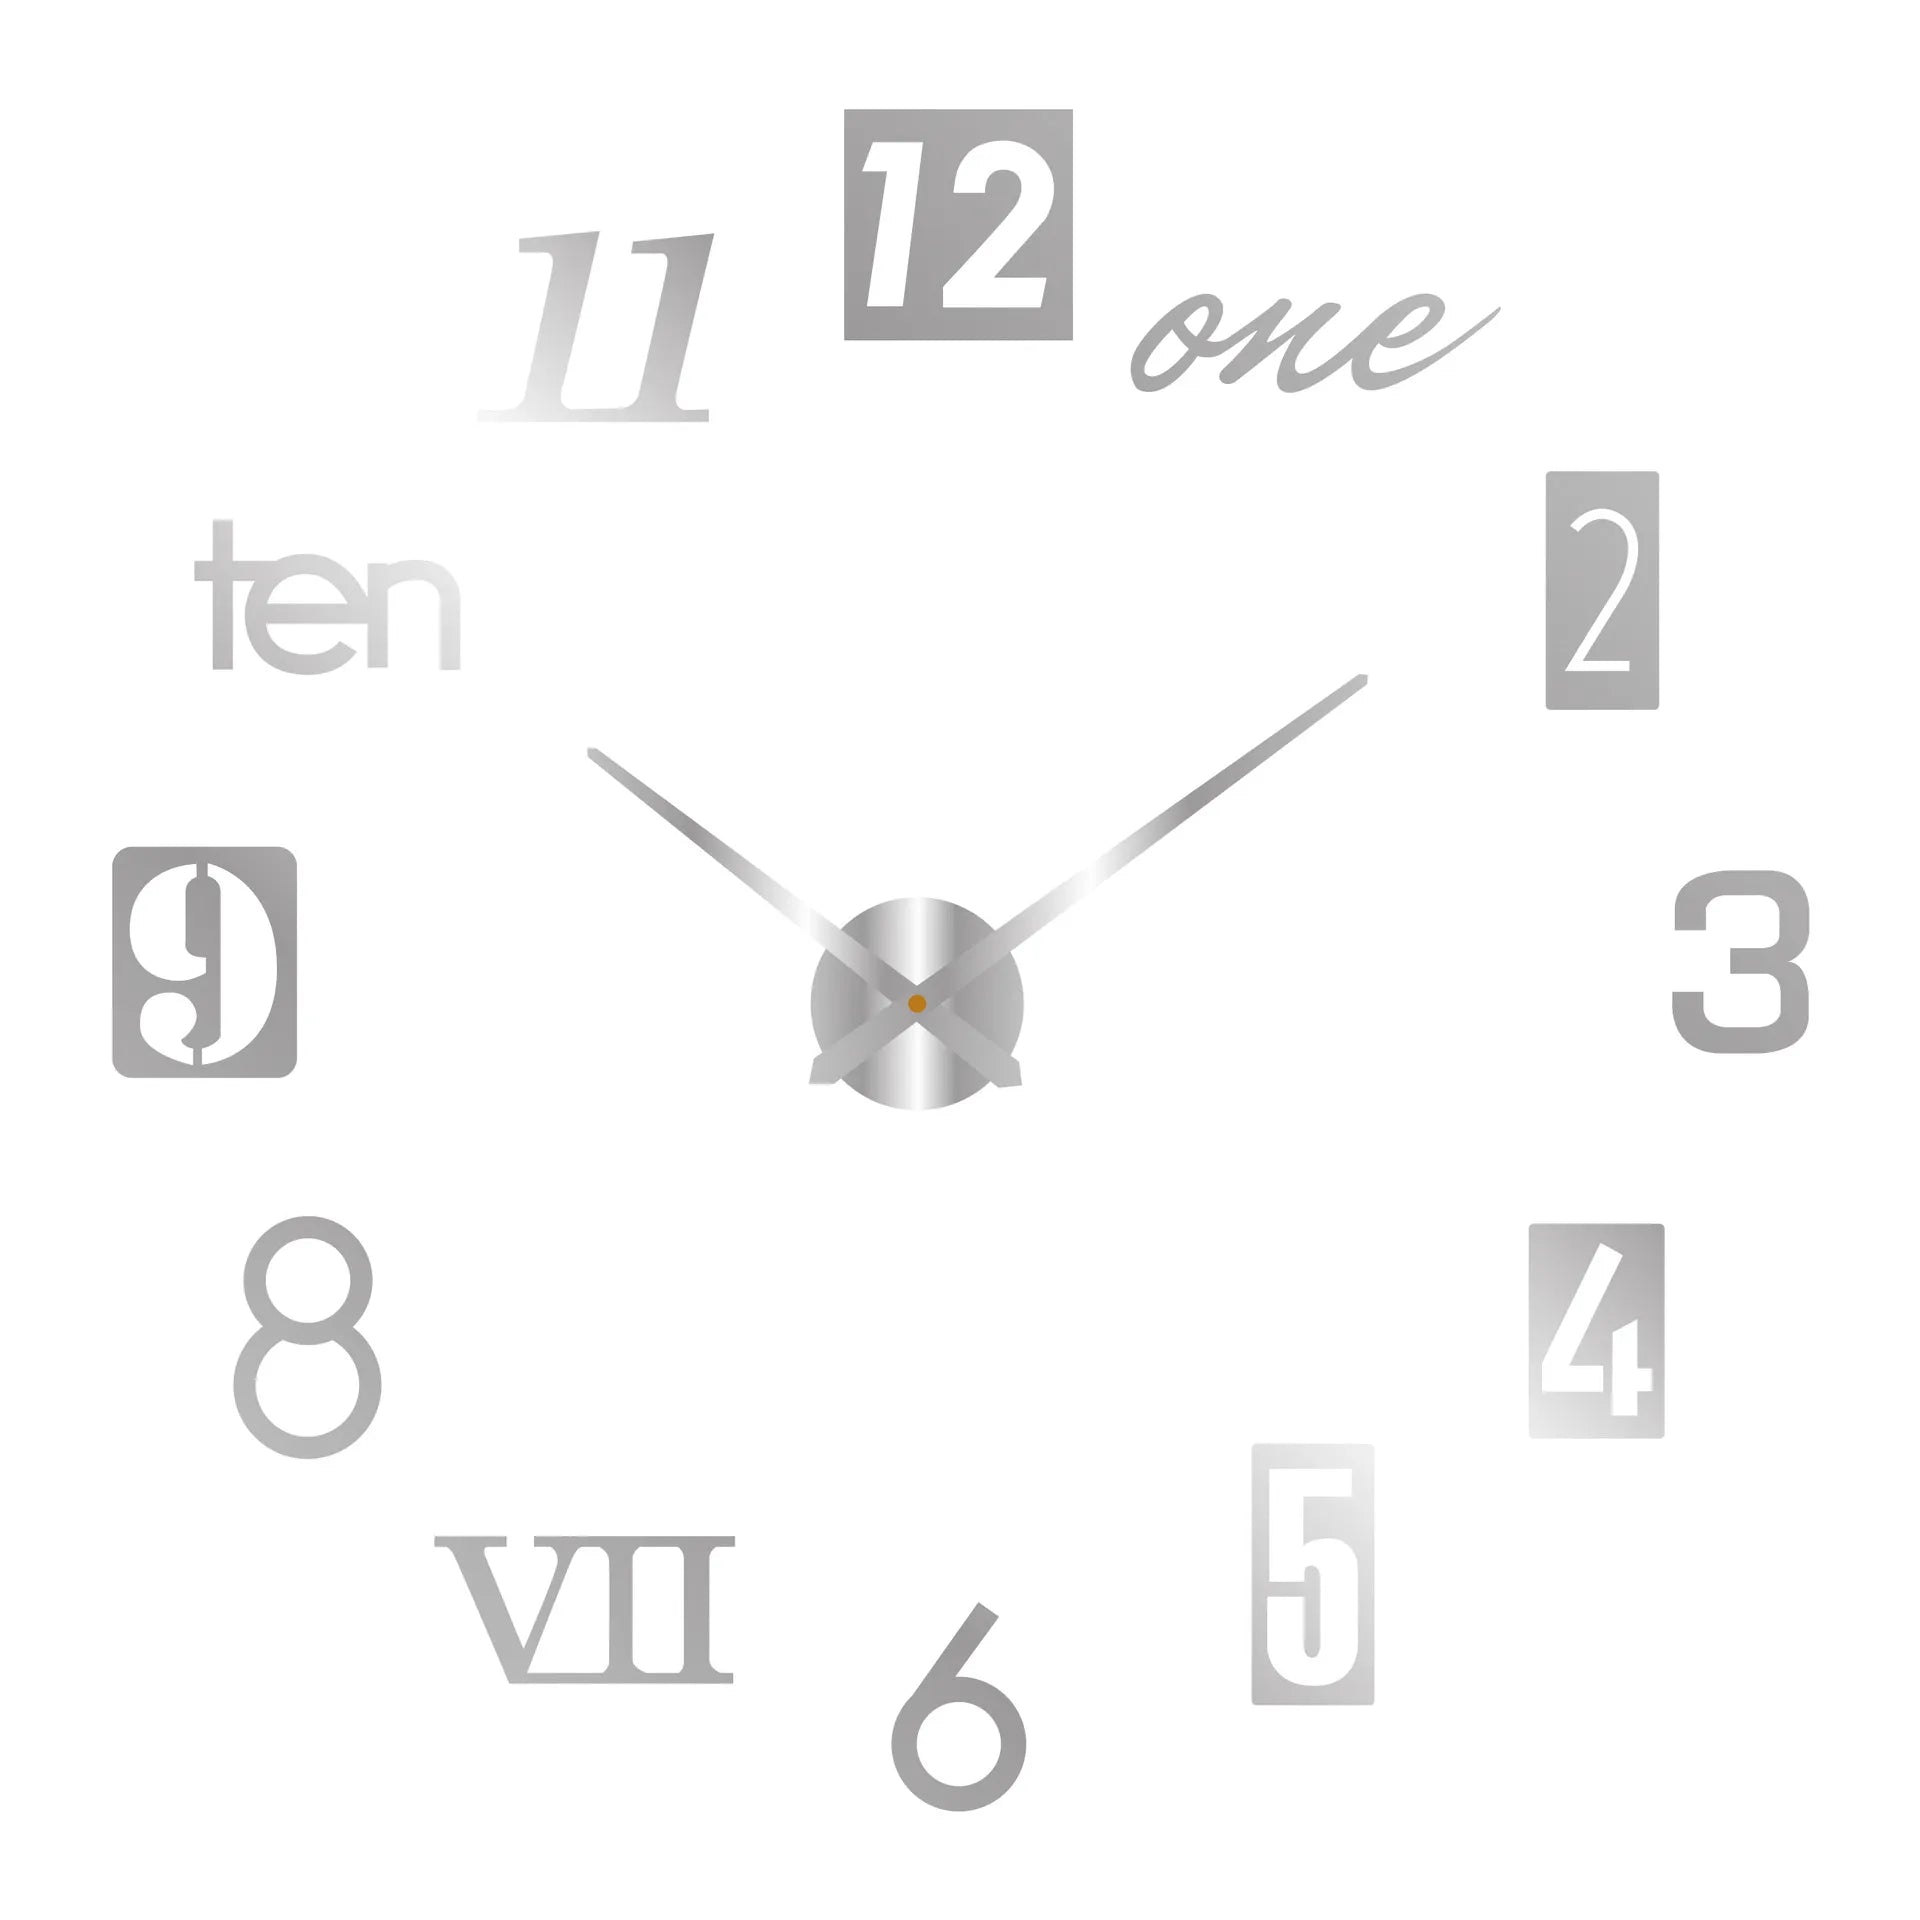 2023 التصميم الحديث ساعة حائط كبيرة ثلاثية الأبعاد لتقوم بها بنفسك ساعات الكوارتز ساعات الموضة الاكريليك ملصقات للمرايا غرفة المعيشة ديكور المنزل Horloge